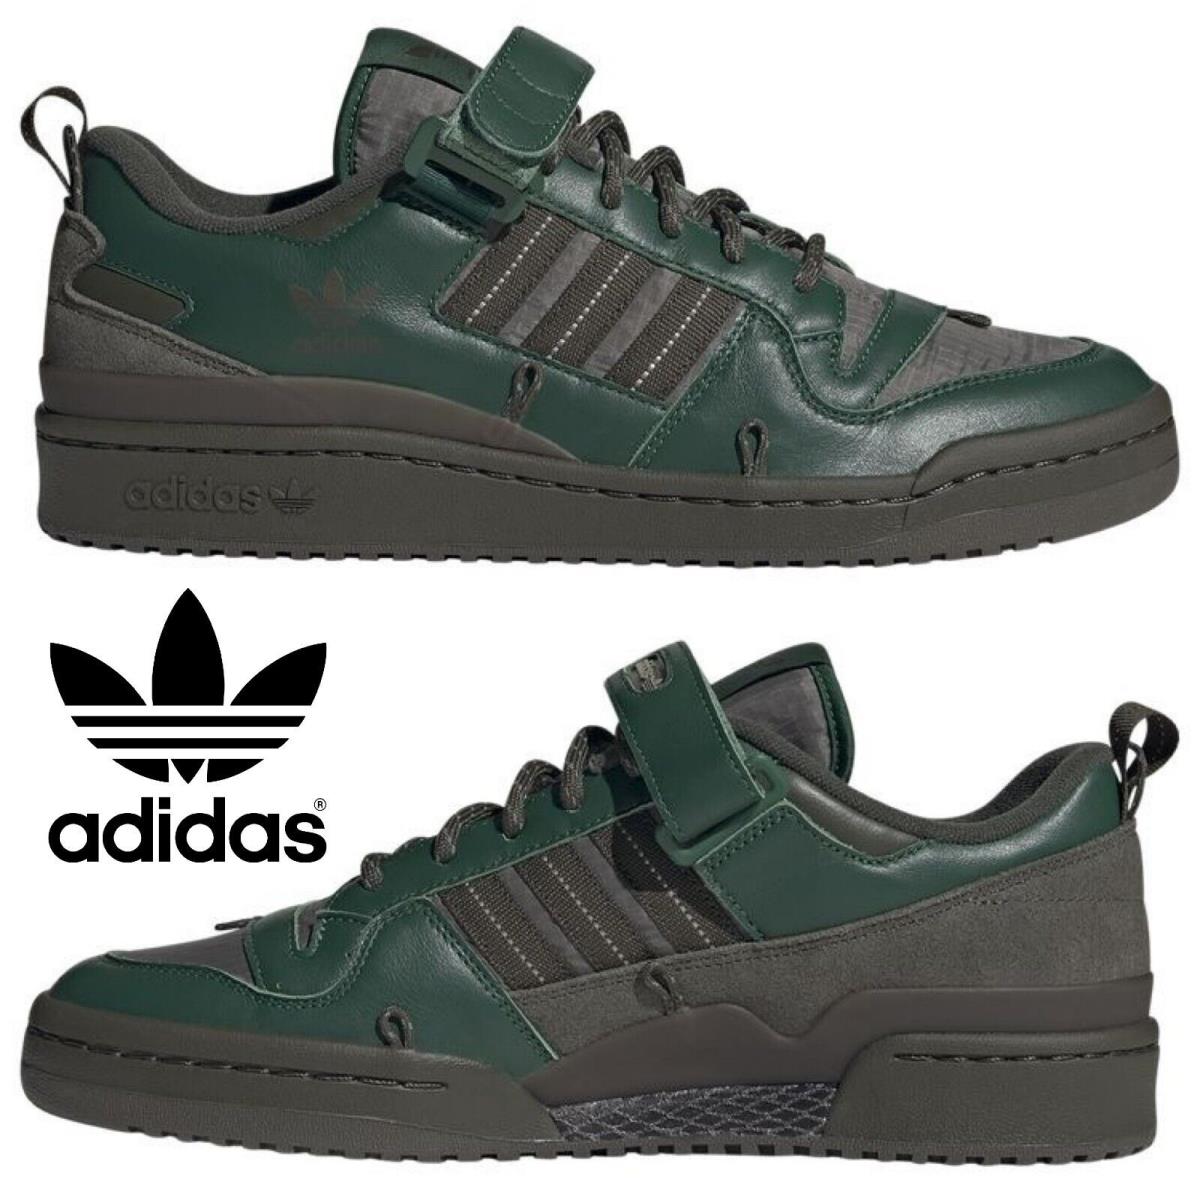 Adidas Originals Forum 84 Low Men`s Sneakers Comfort Sport Casual Shoes Green - Green , Dark Green / Night Cargo / Cargo Brown Manufacturer